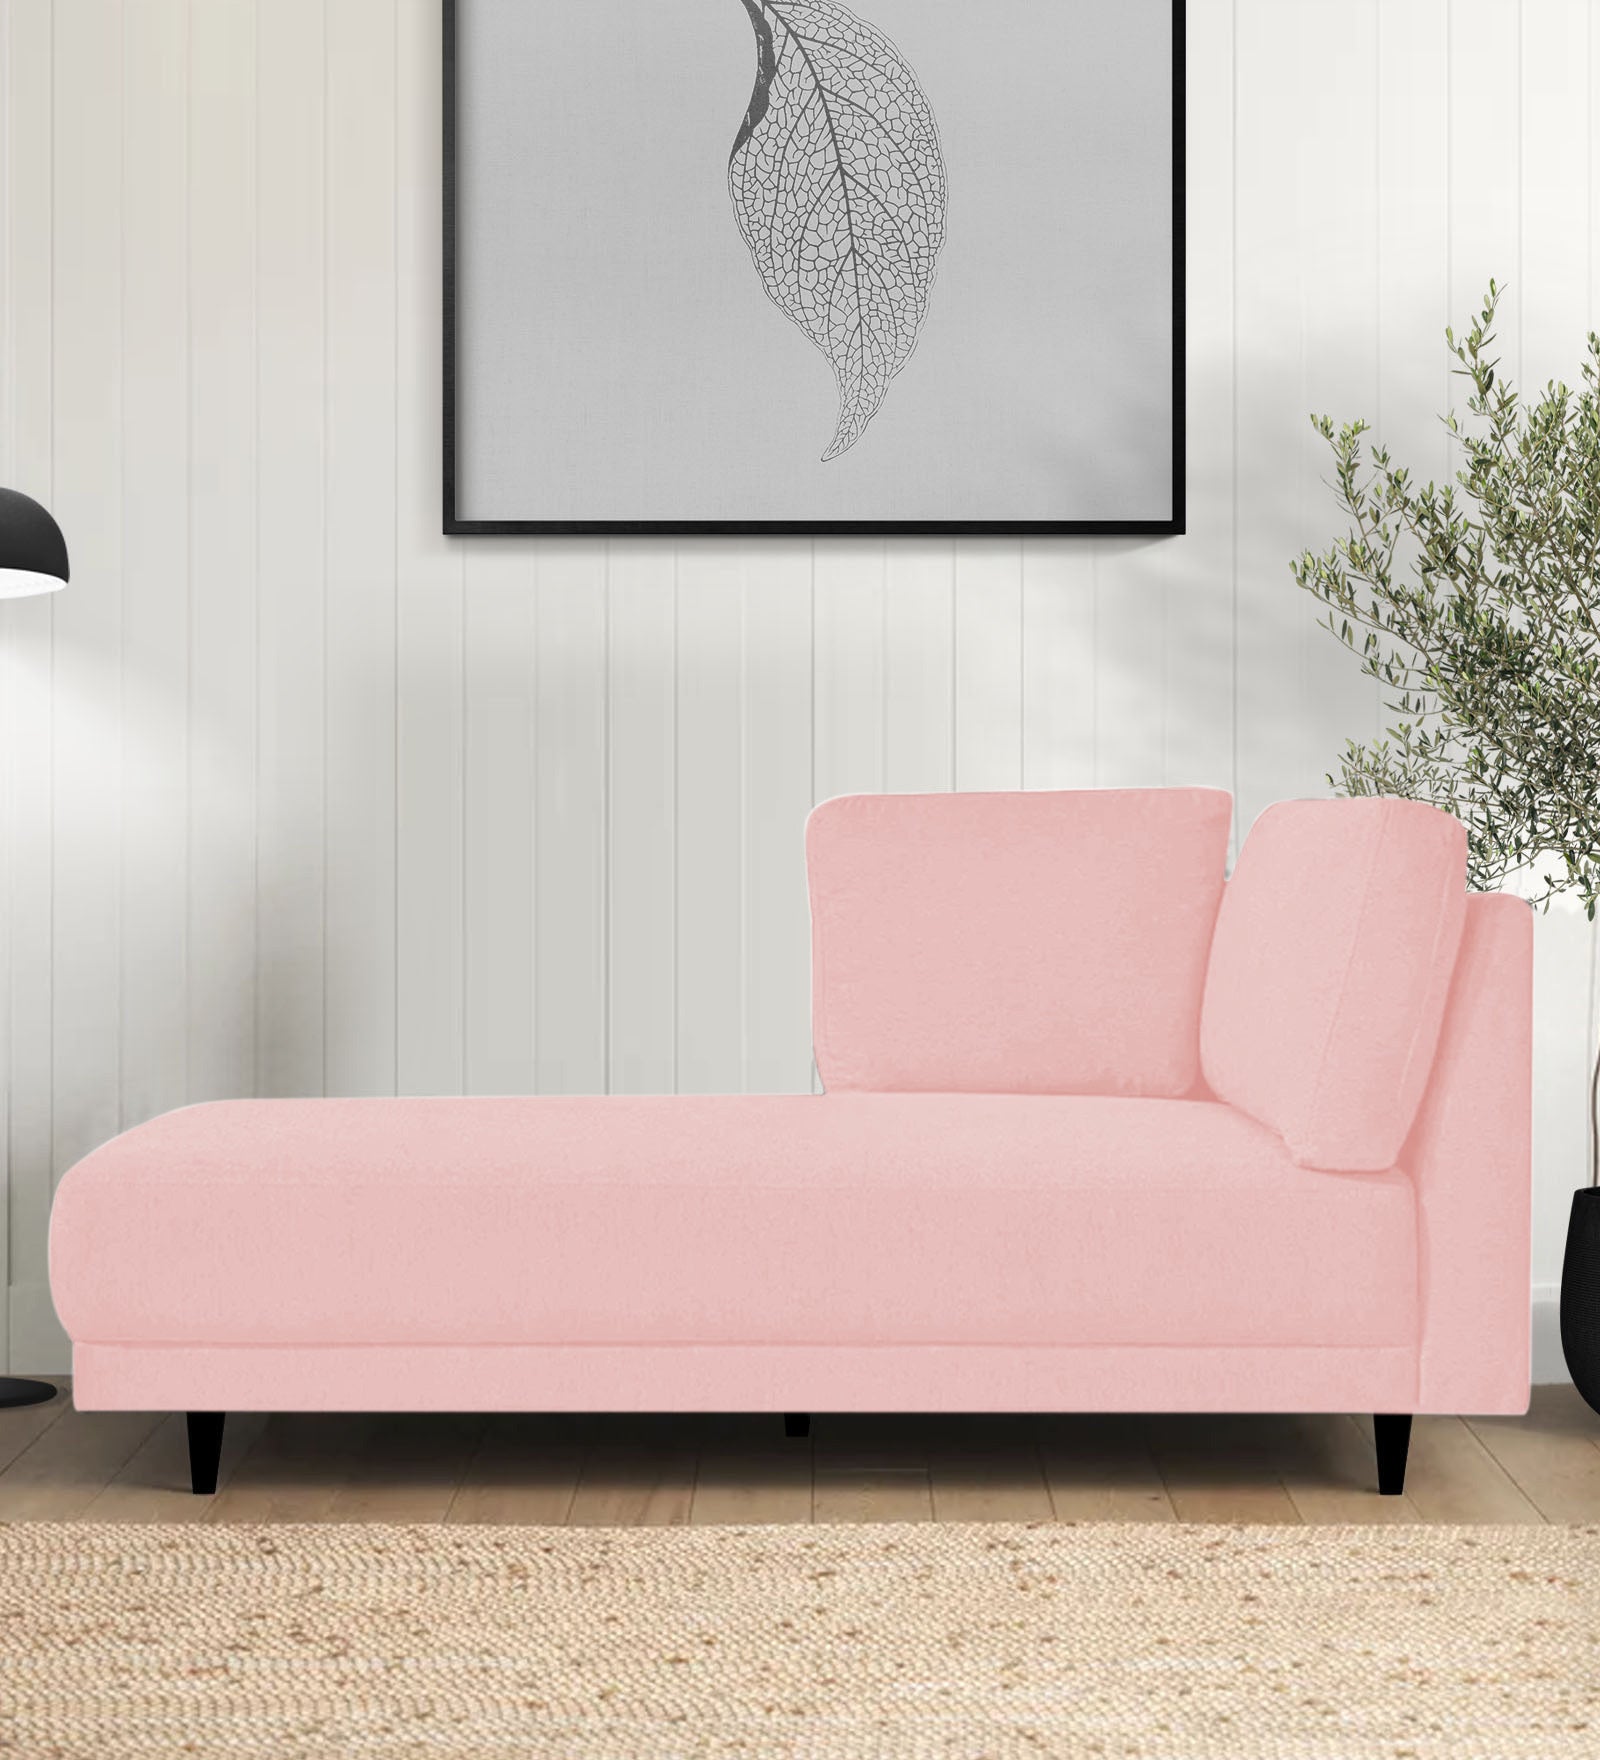 Jonze Velvet LHS Chaise Lounger in Millennial Pink Colour